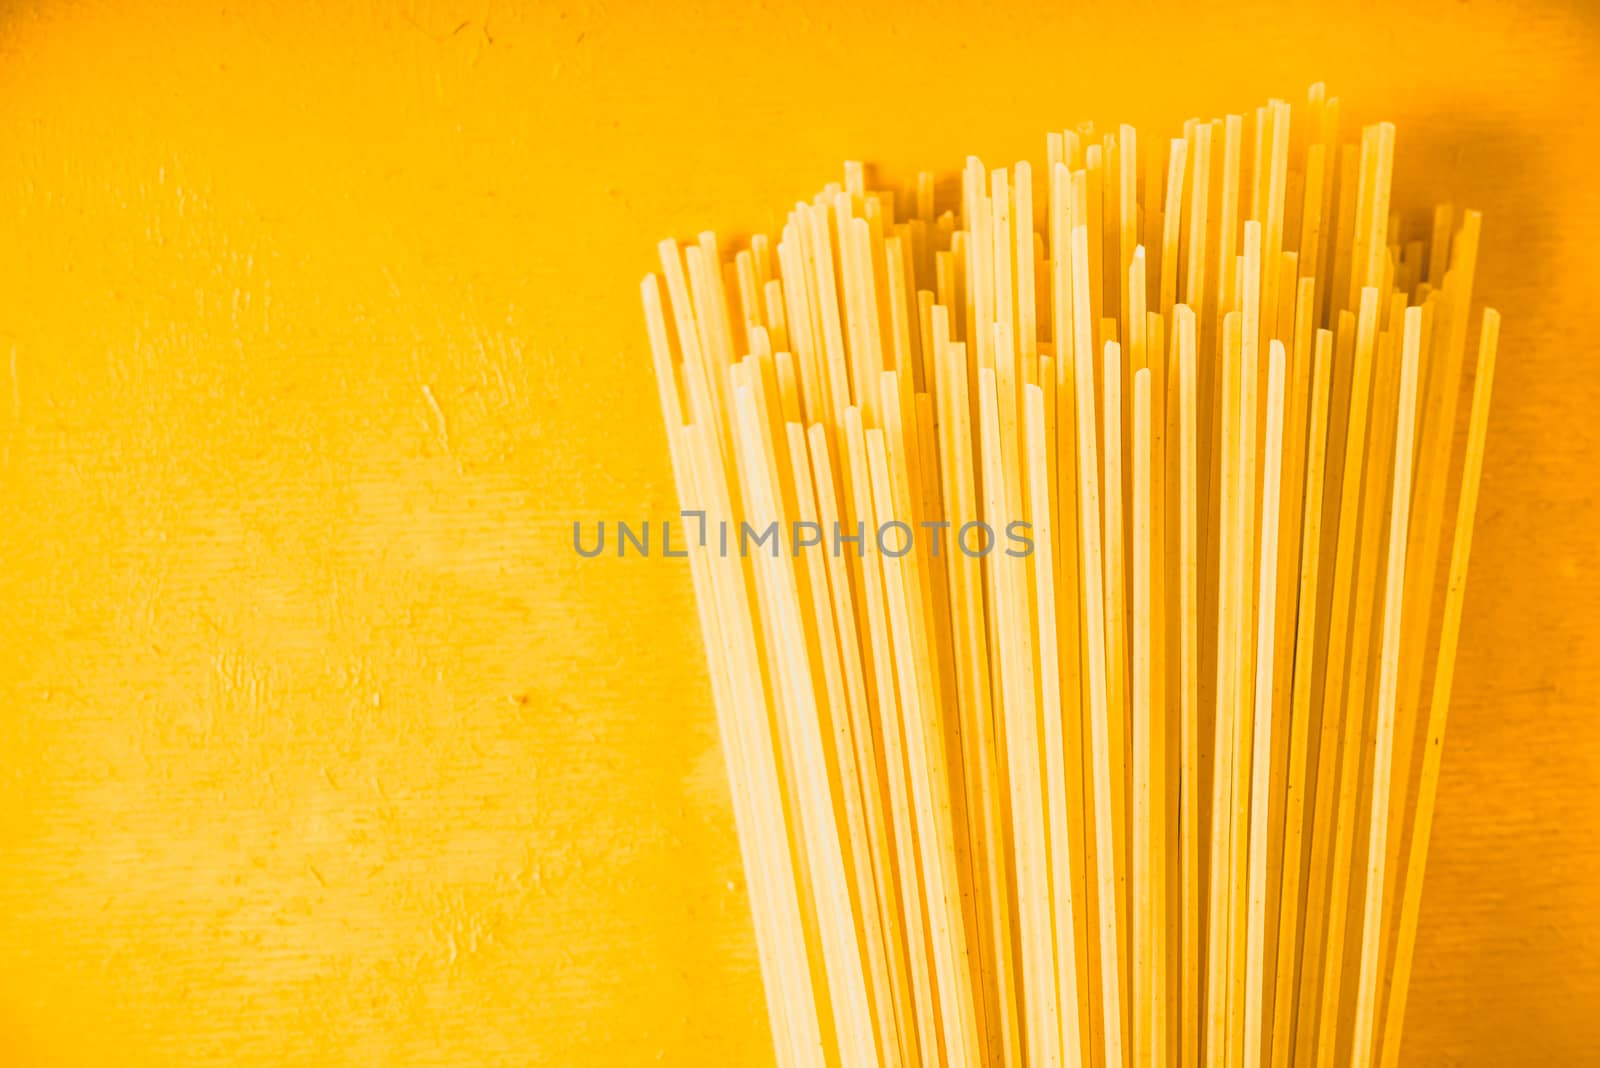 Raw spaghetti on the yellow background horizontal